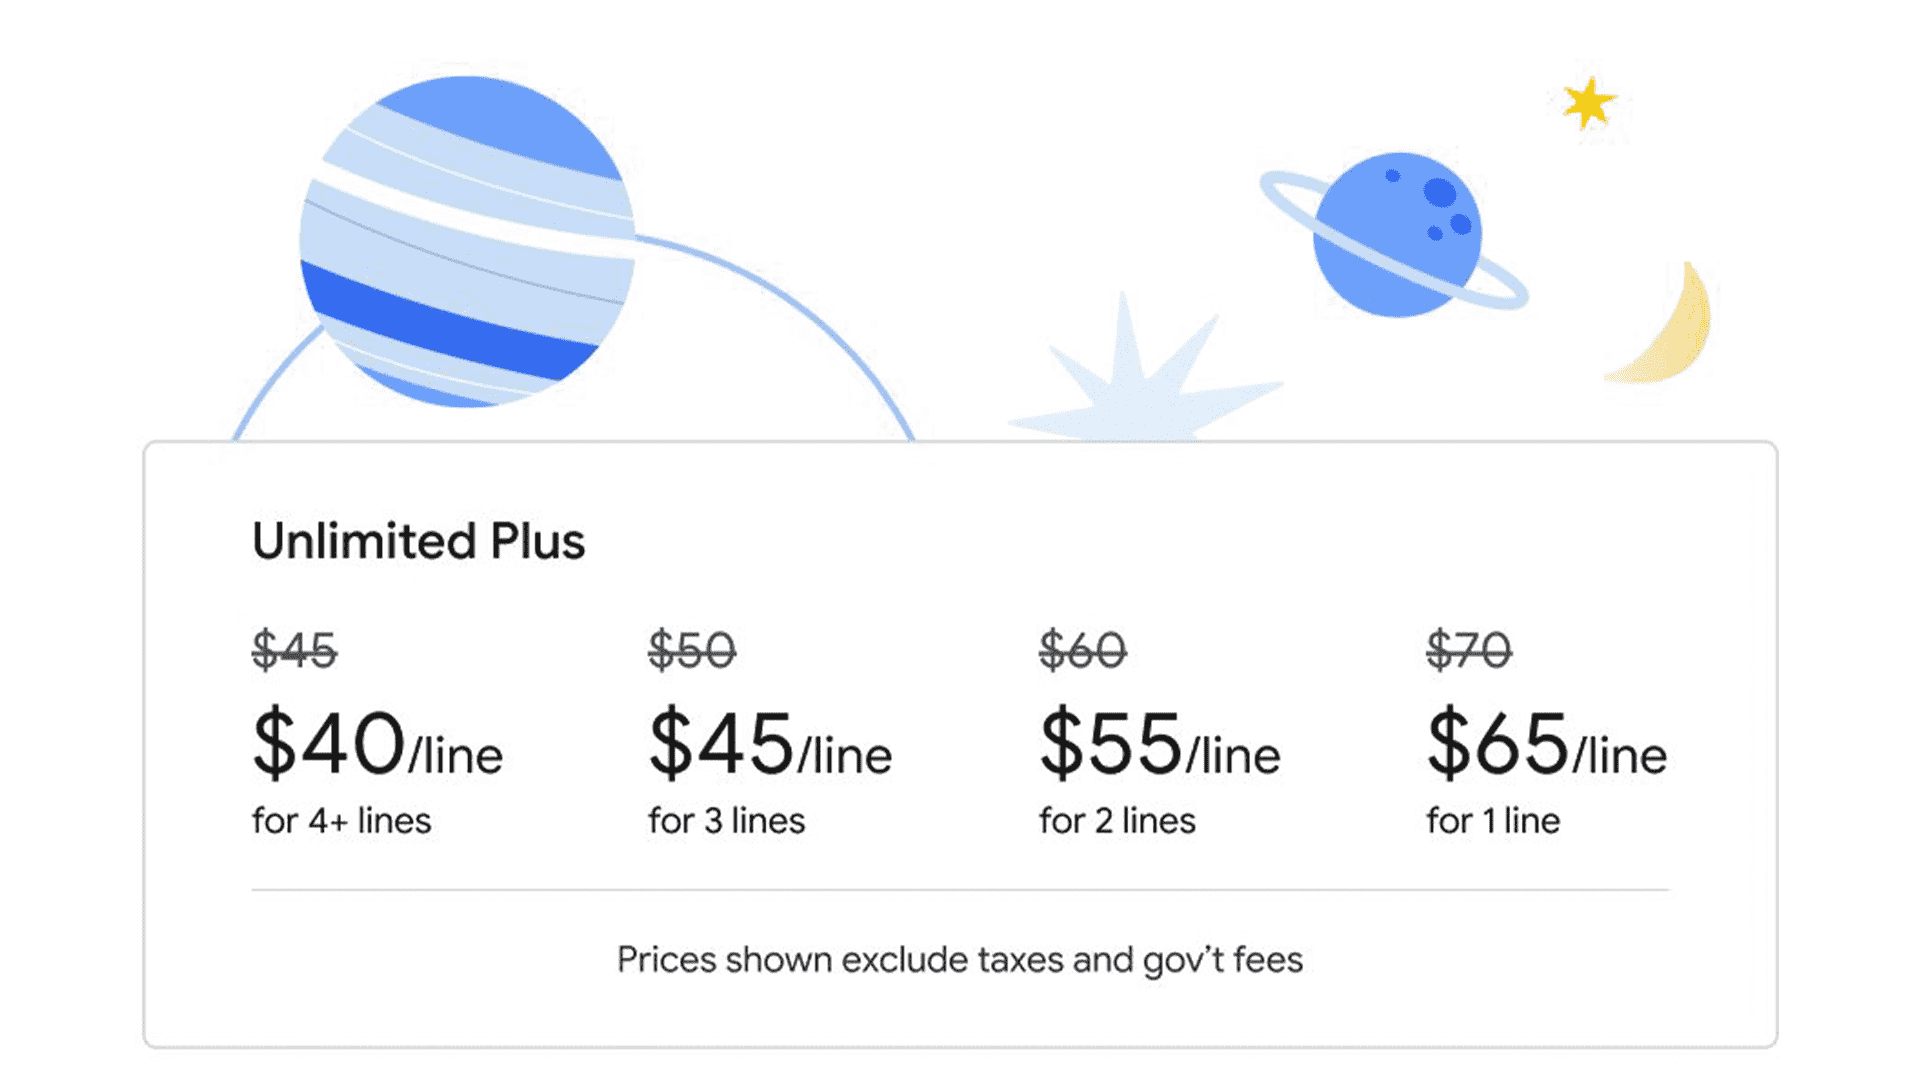 Les nouveaux forfaits Unlimited Plus de Google Fi commencent à 65 $ pour une ligne.